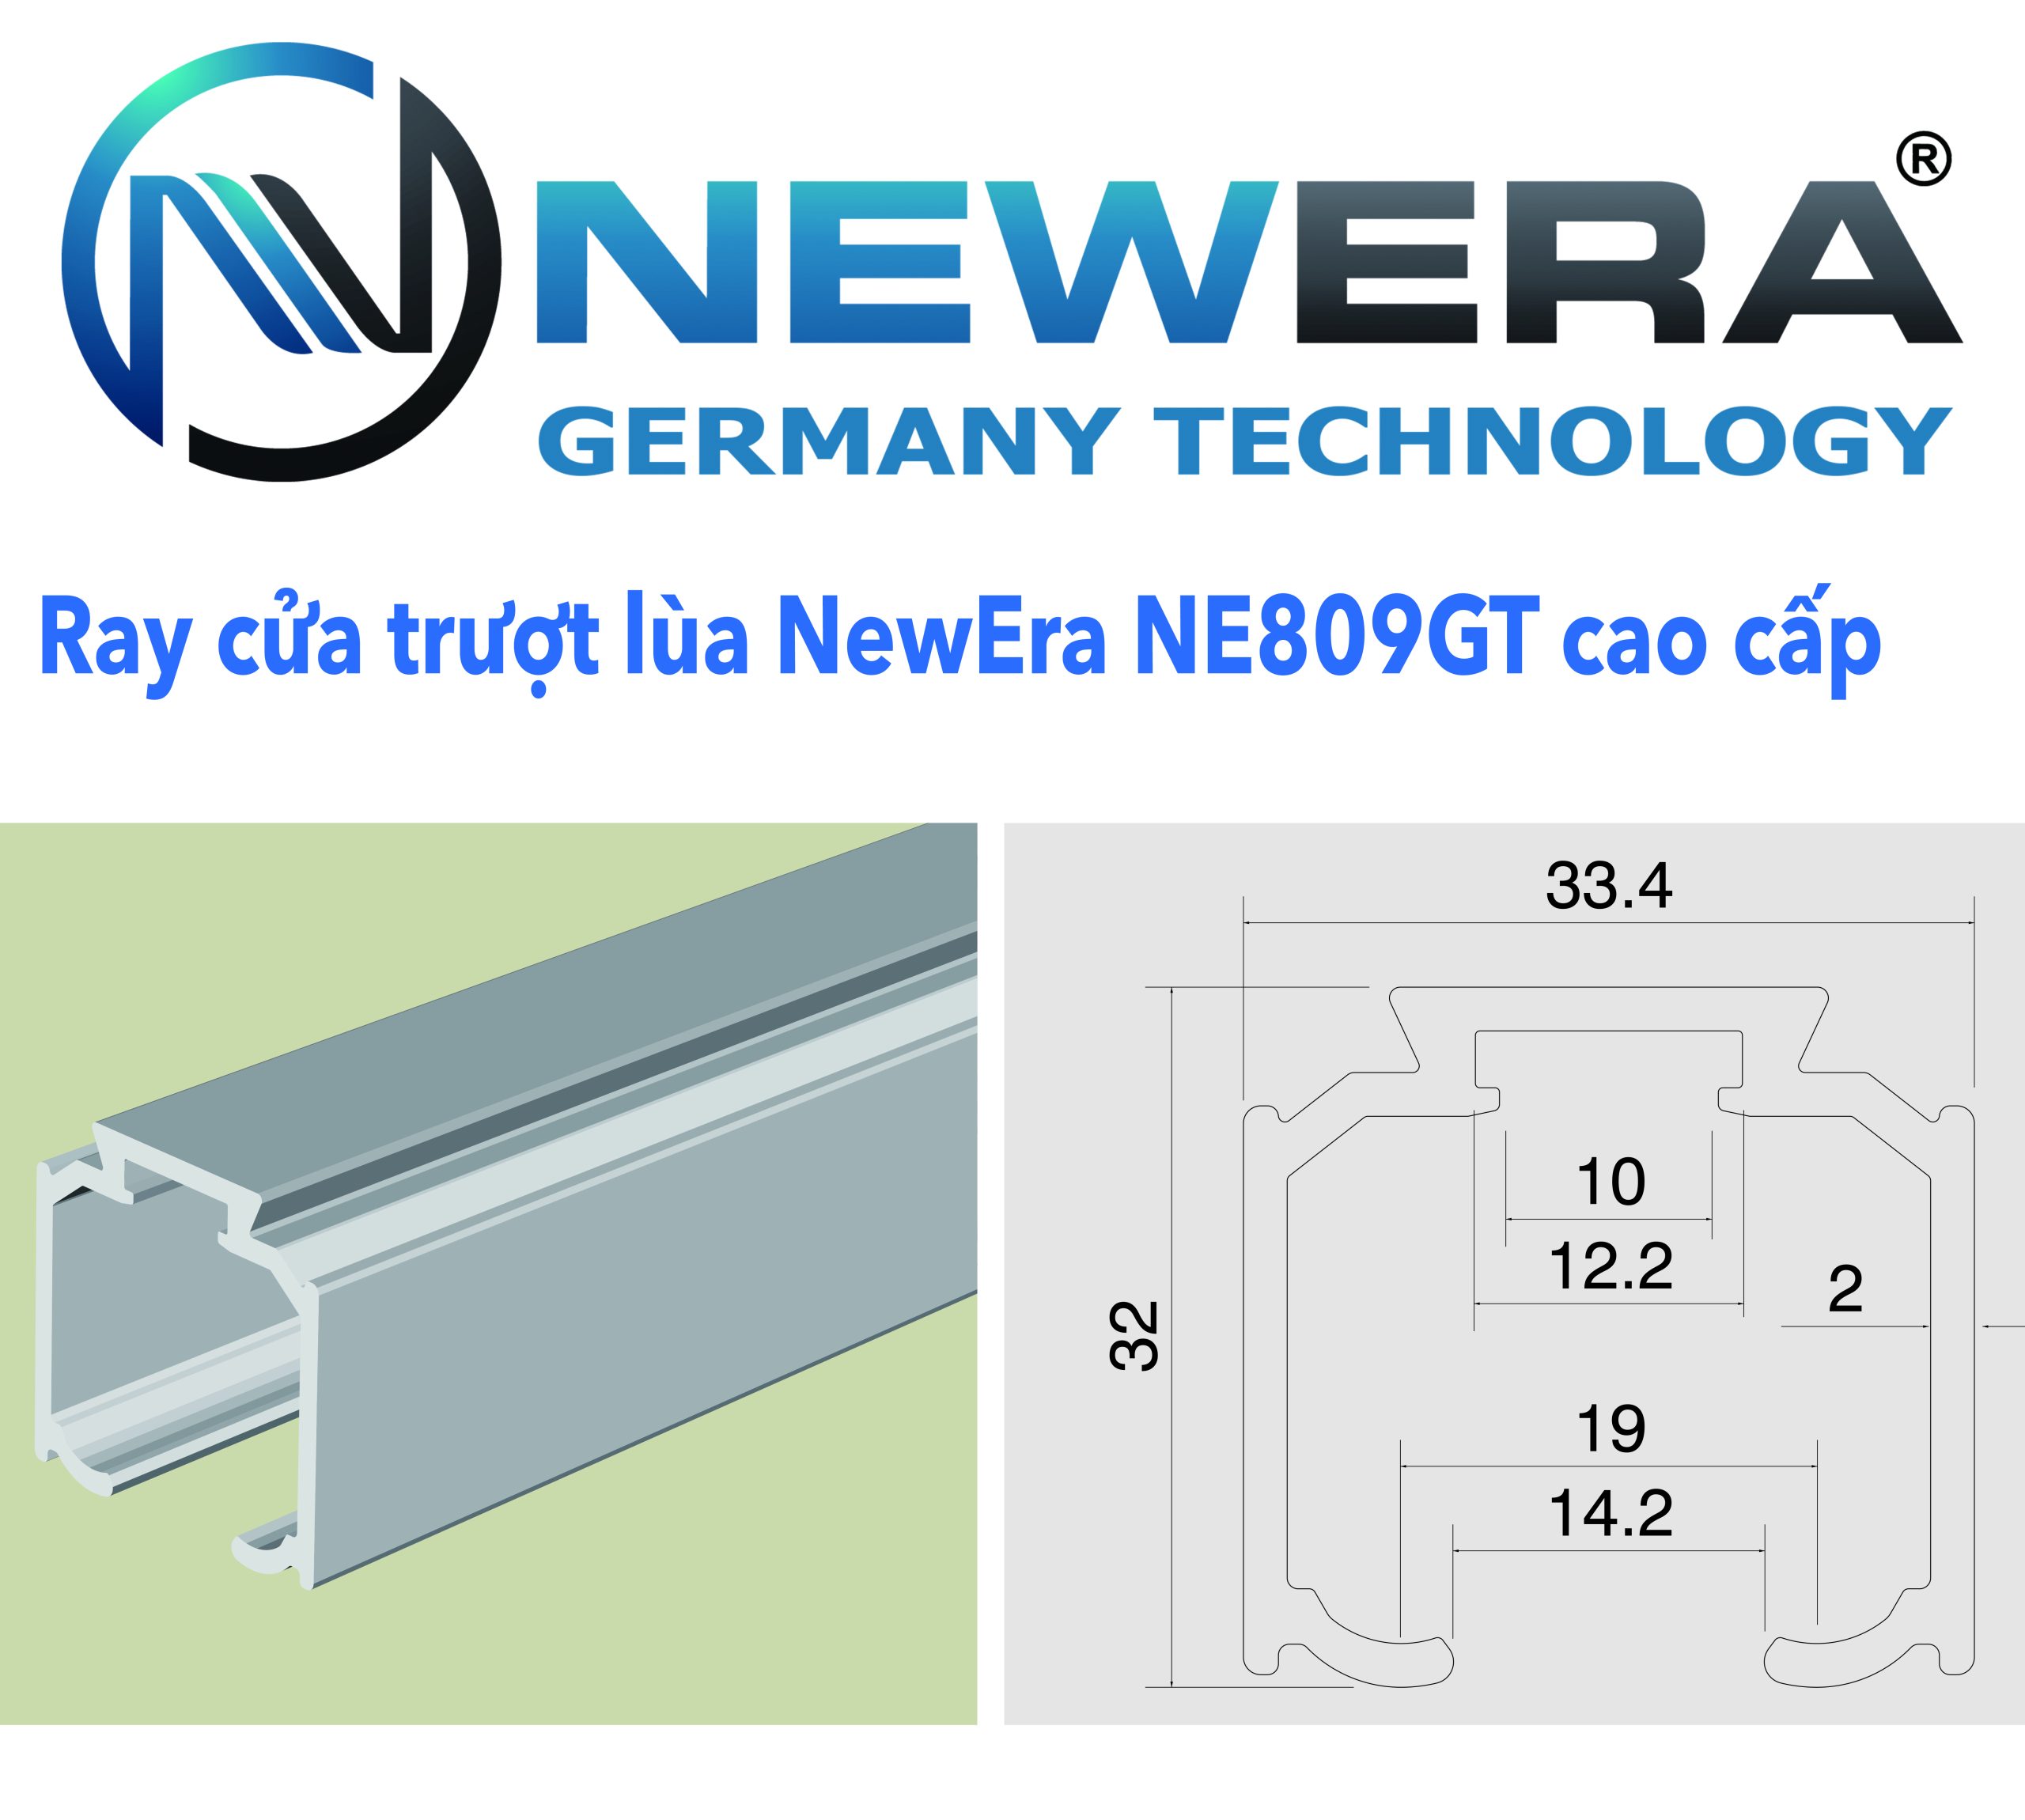 Ray cua truot lua truot gap NewEra NE809GT dai 2.5m 1 scaled